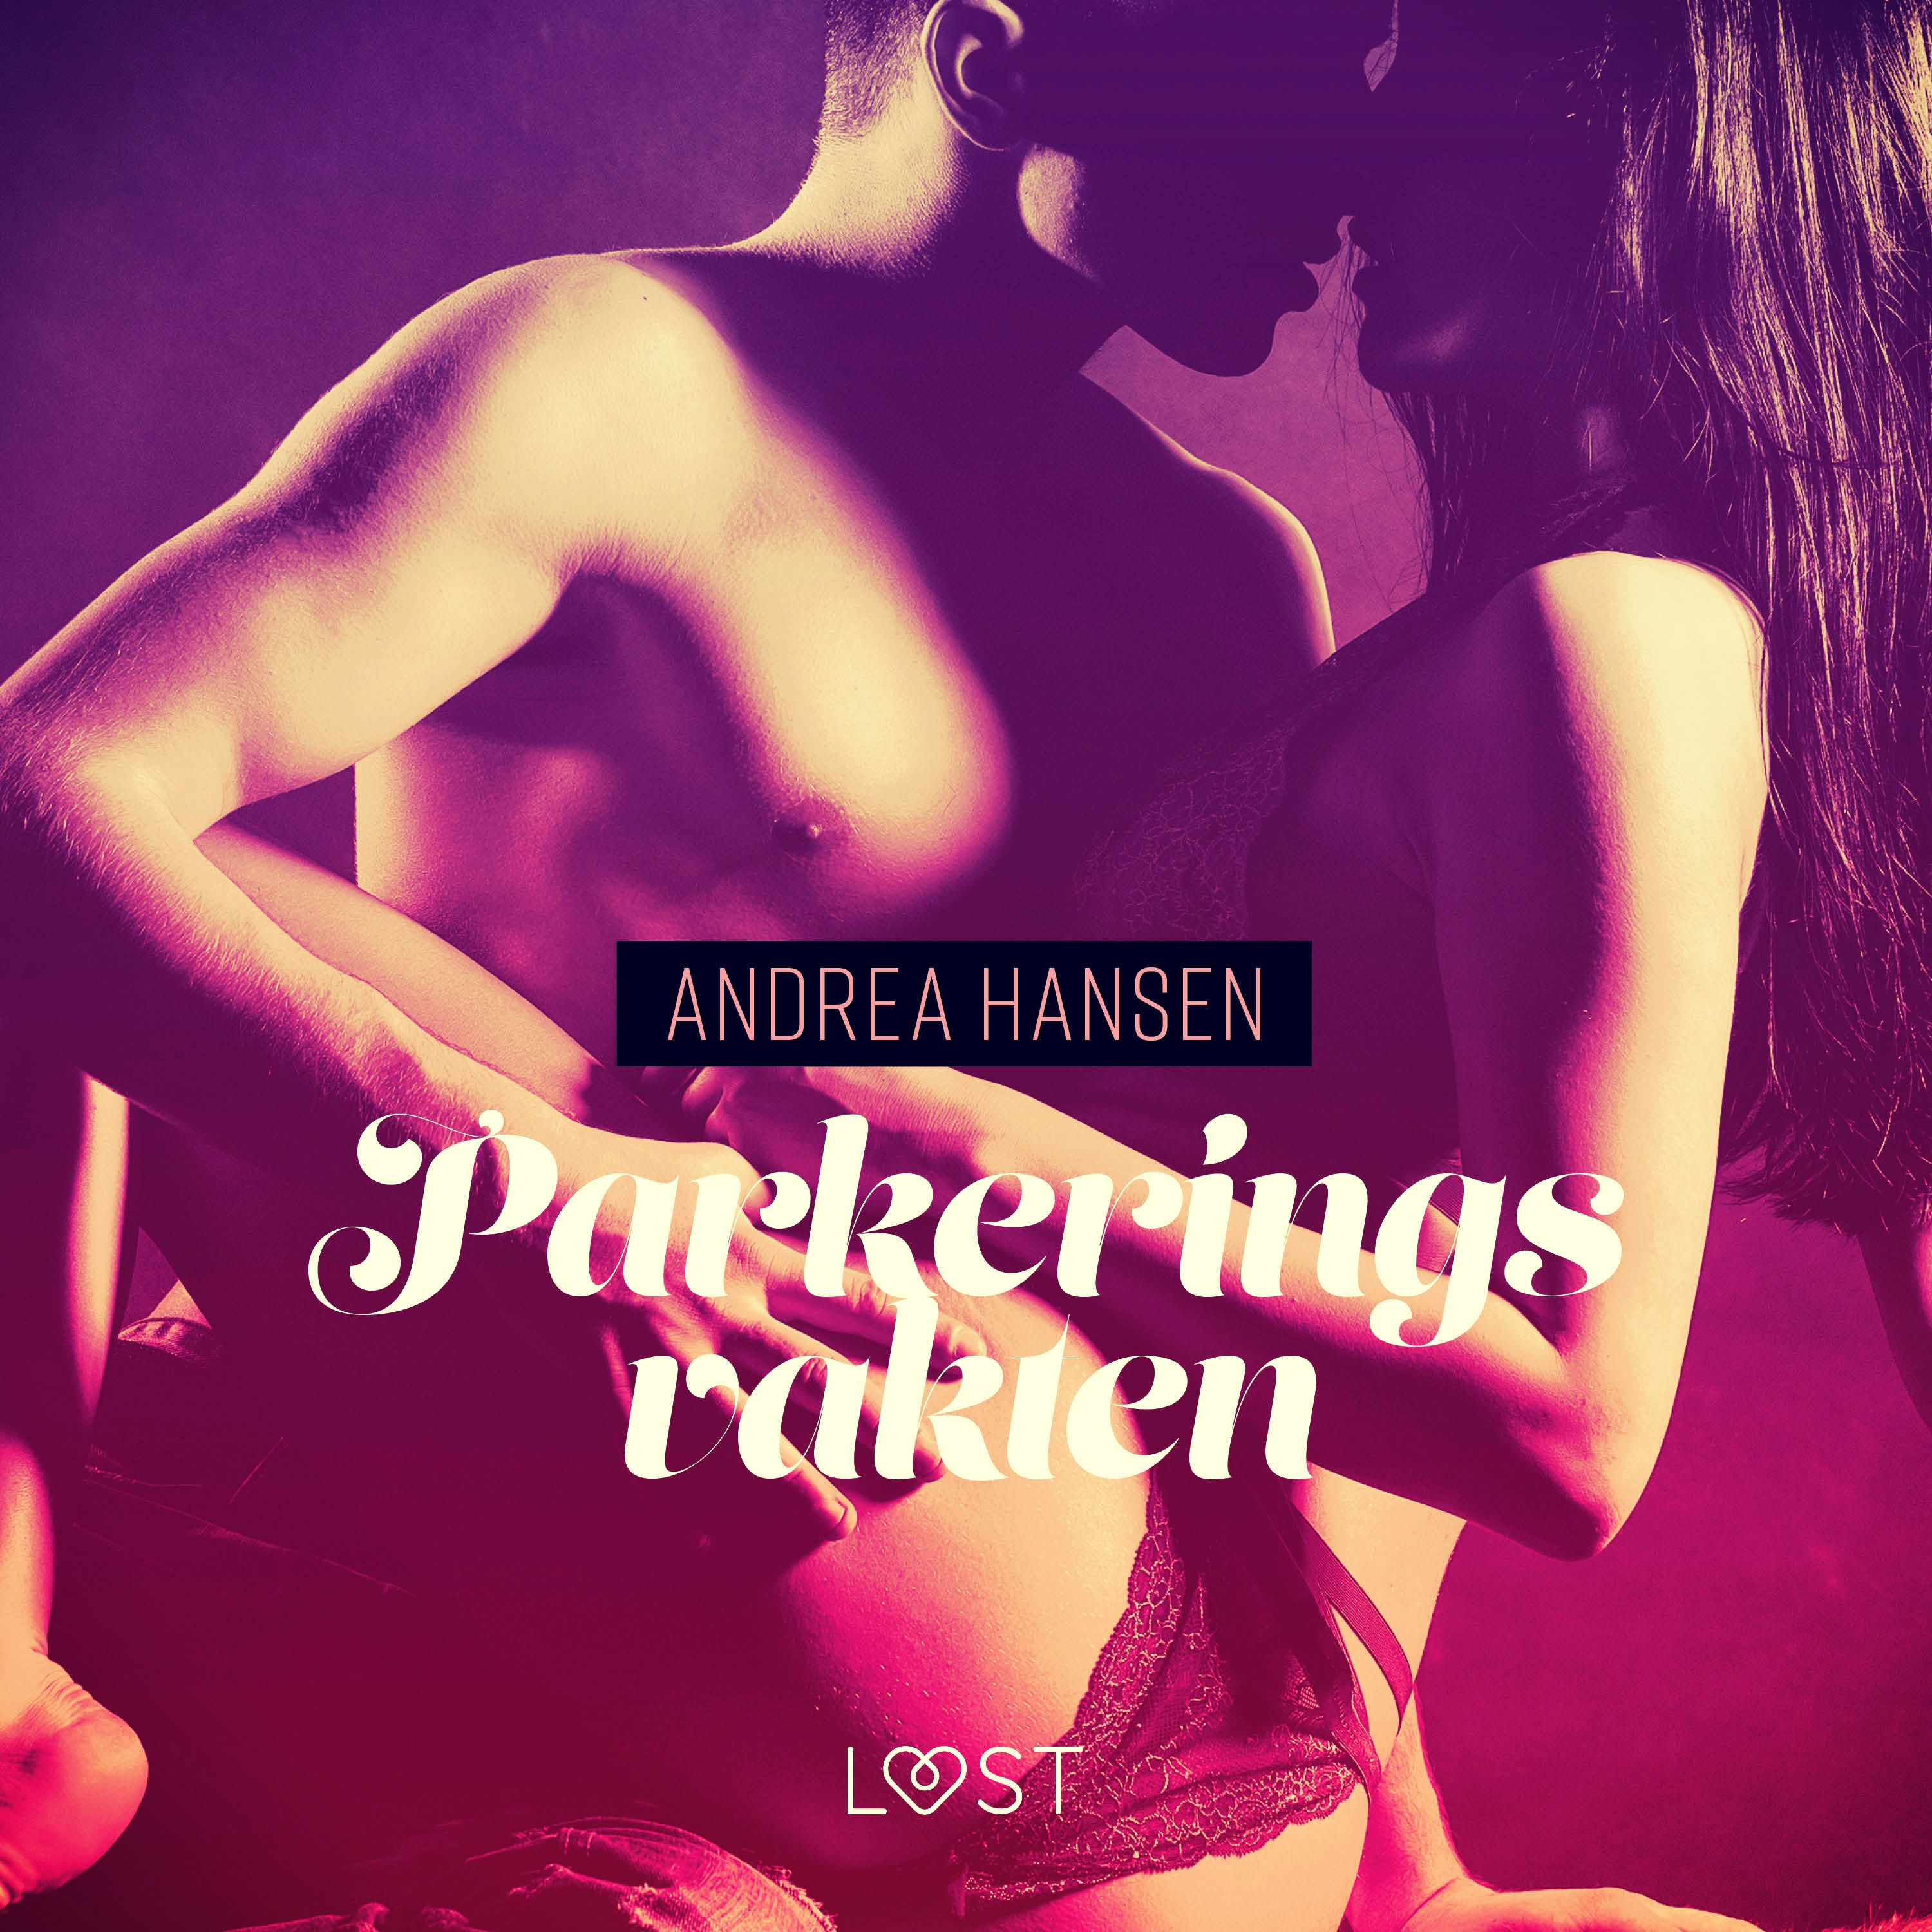 Parkeringsvakten - erotisk novell, audiobook by Andrea Hansen